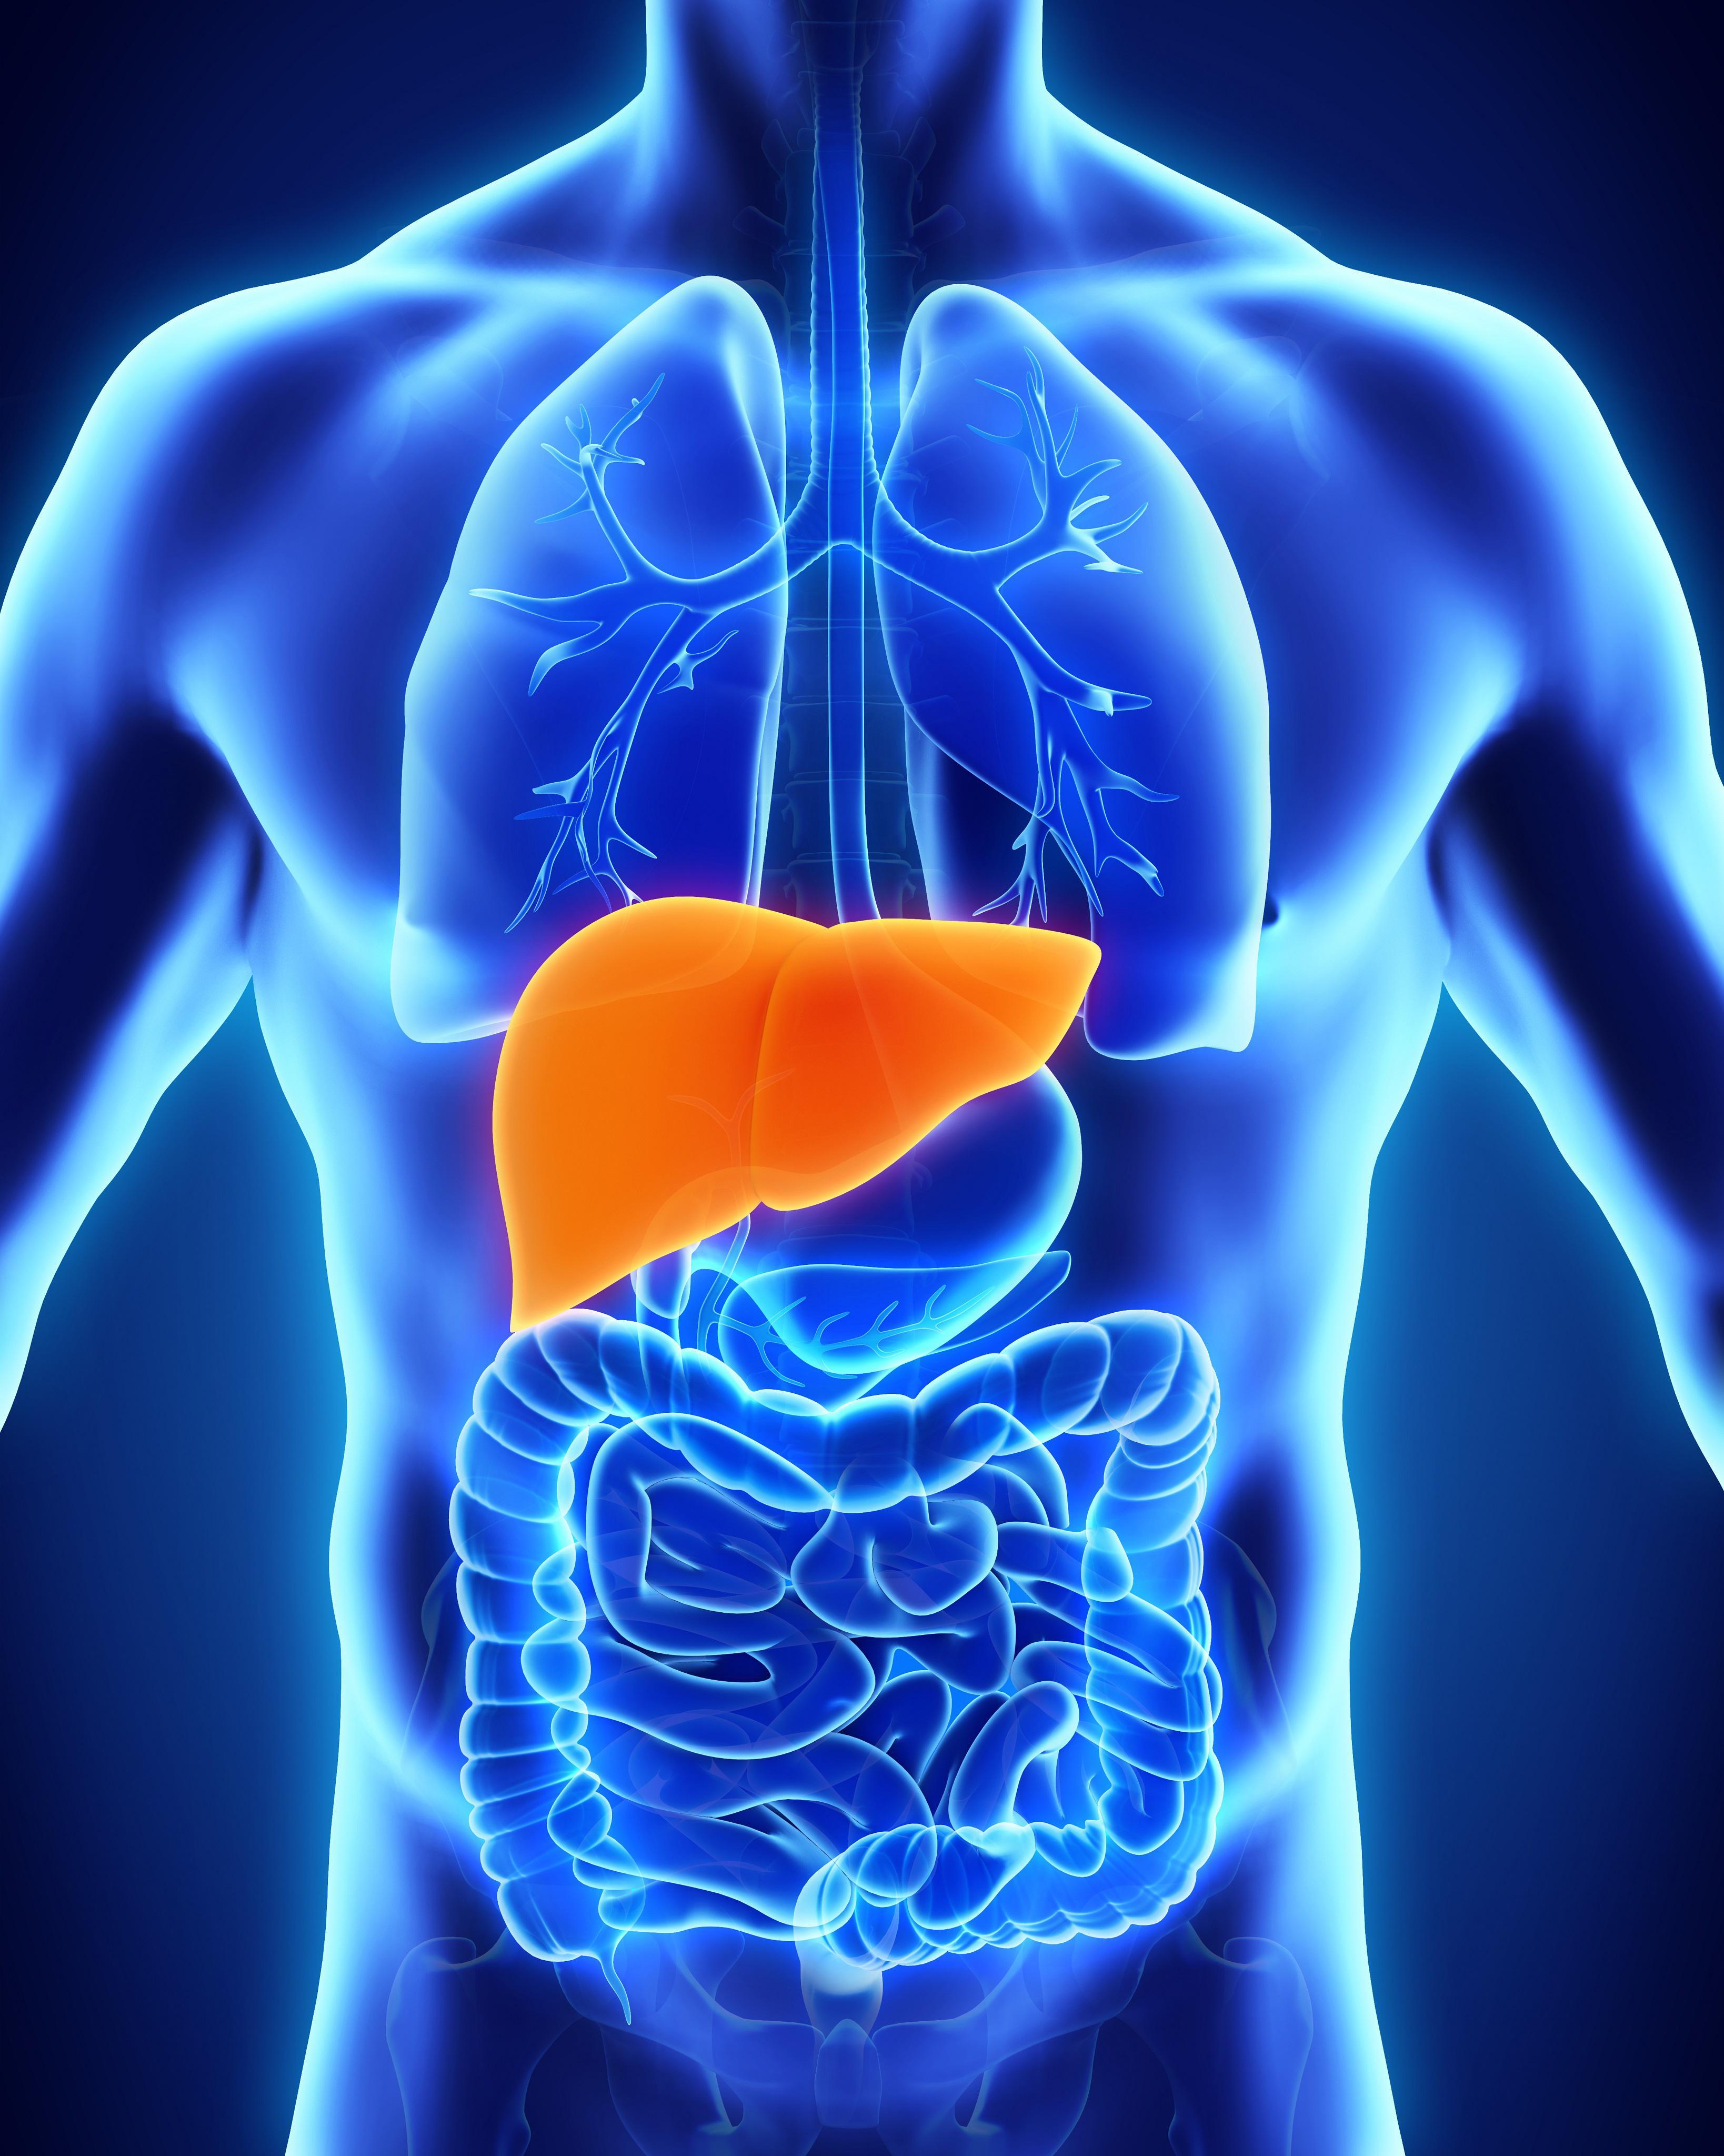 Liver Disease | MedlinePlus